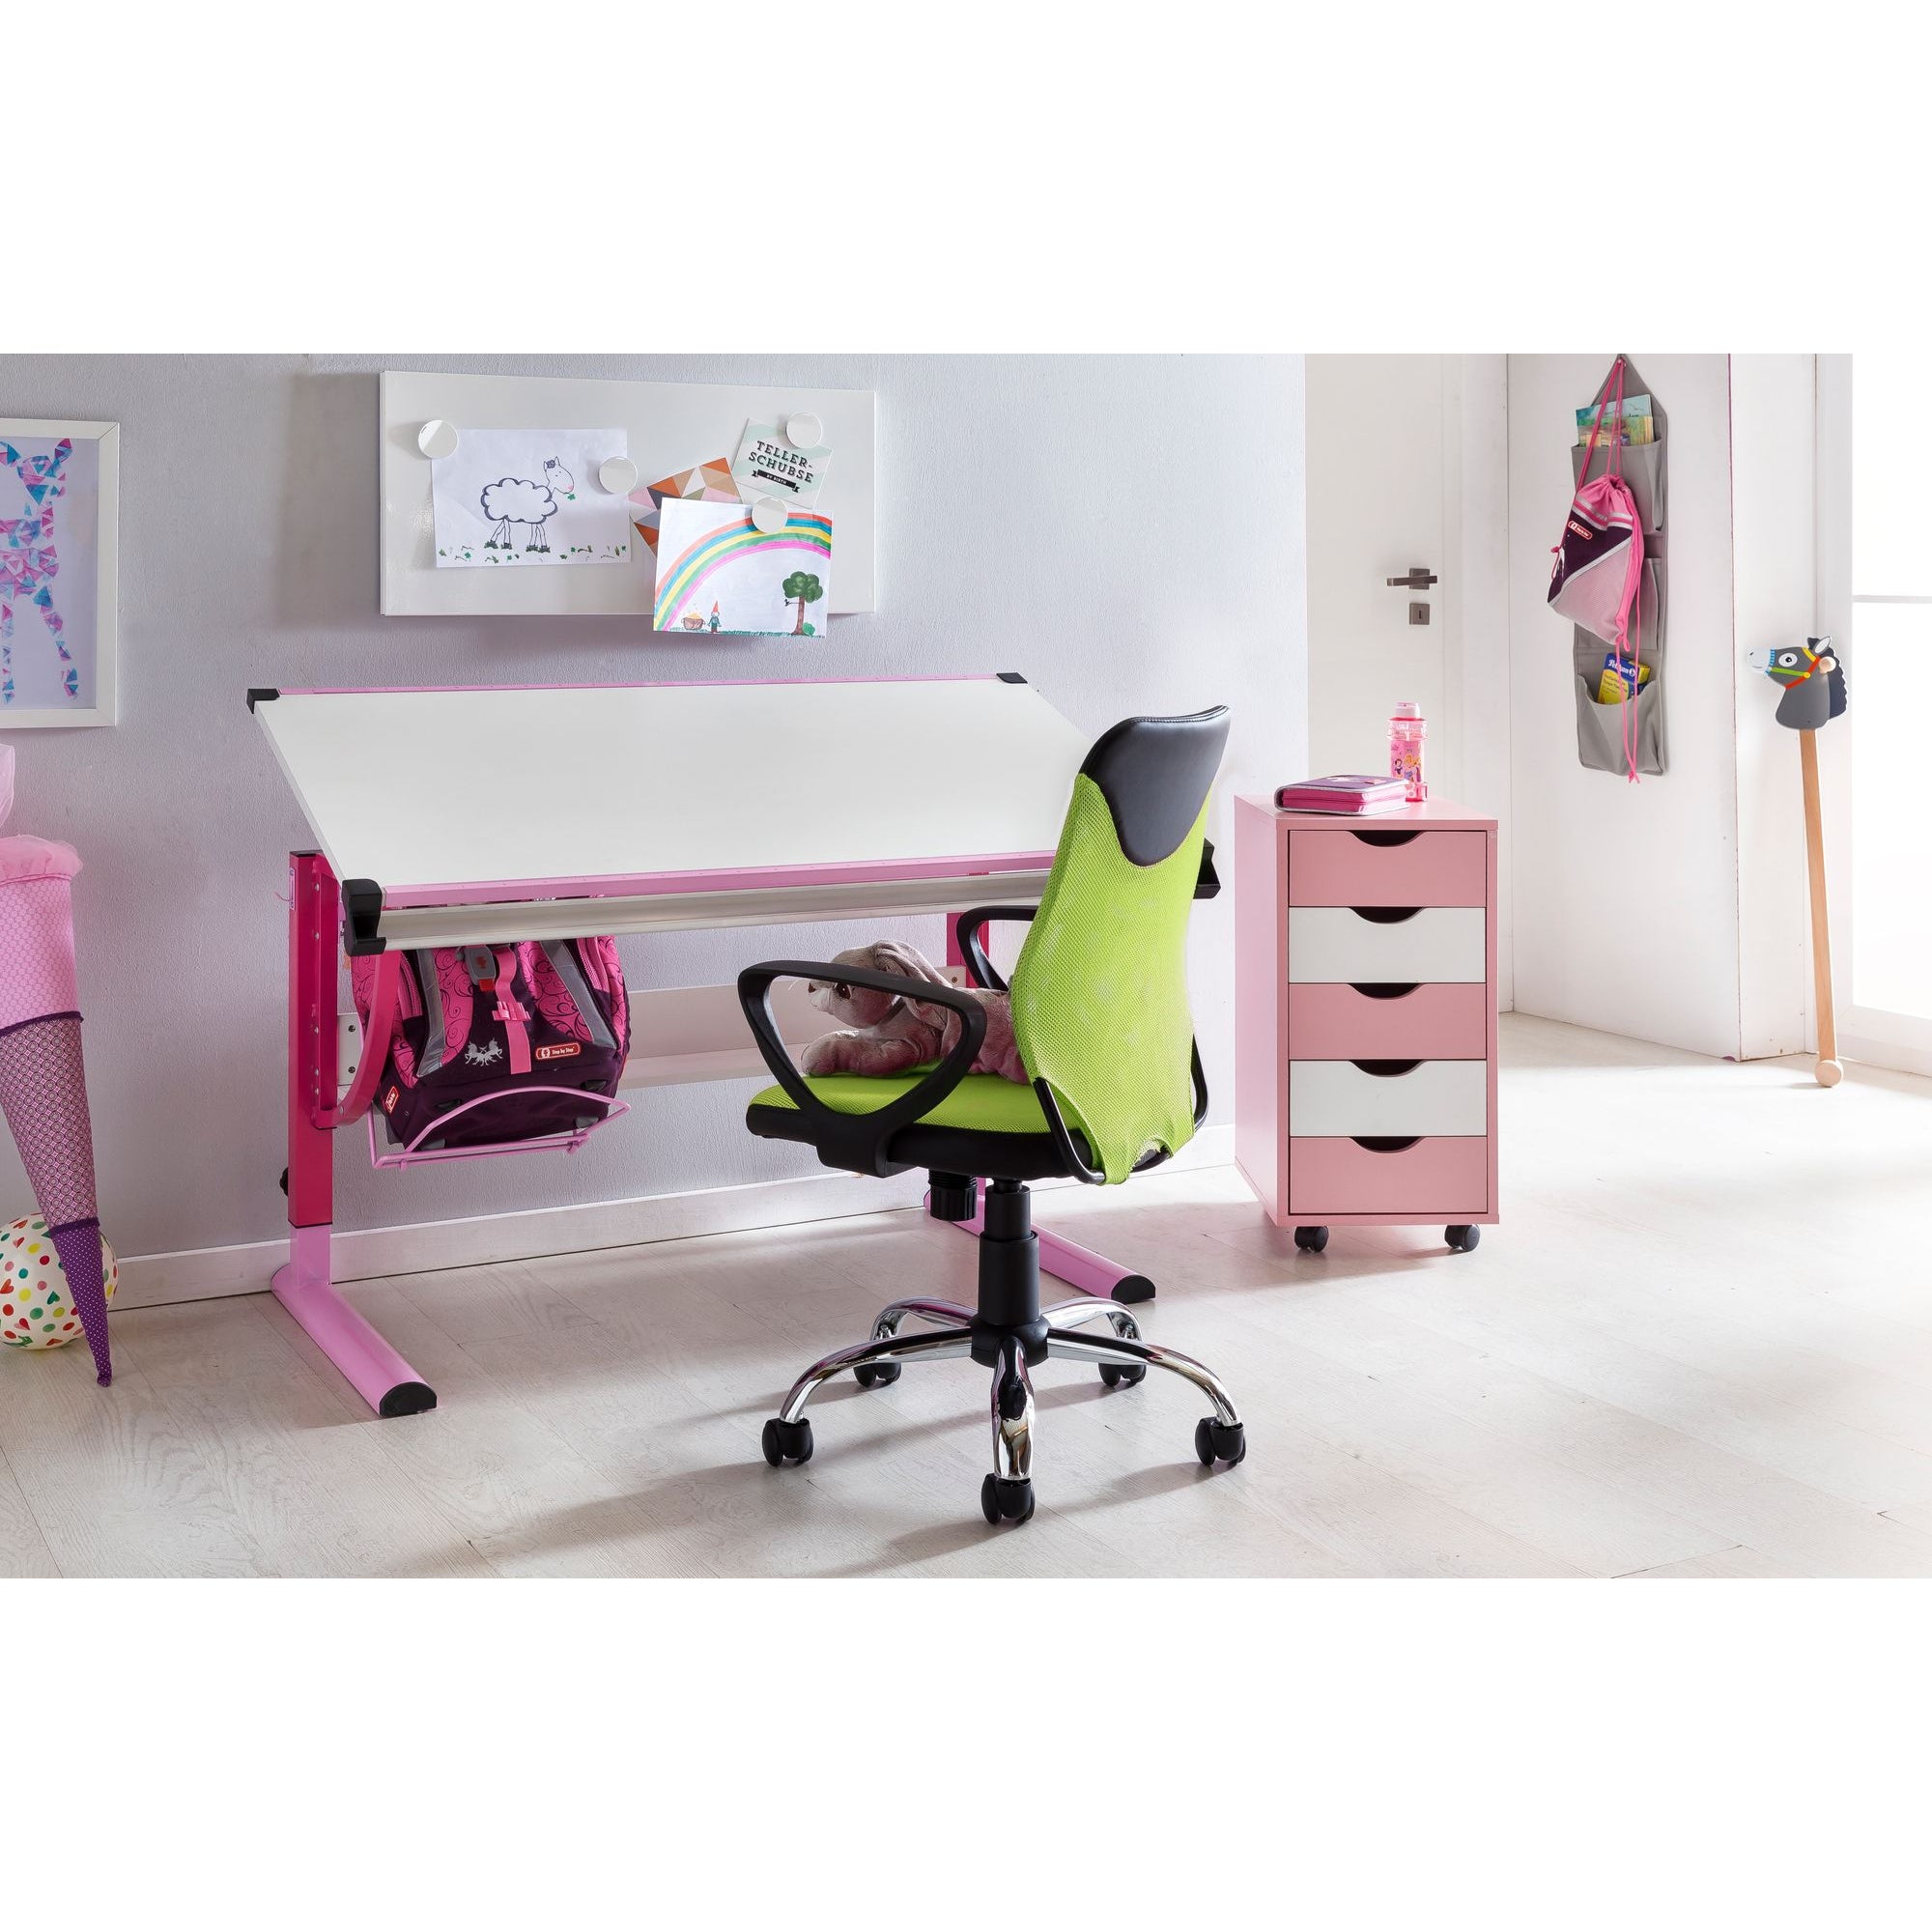 Nancy's Sulphur Bureaustoel voor Kinderen - Draaistoel - Kinder Bureaustoel - Lime